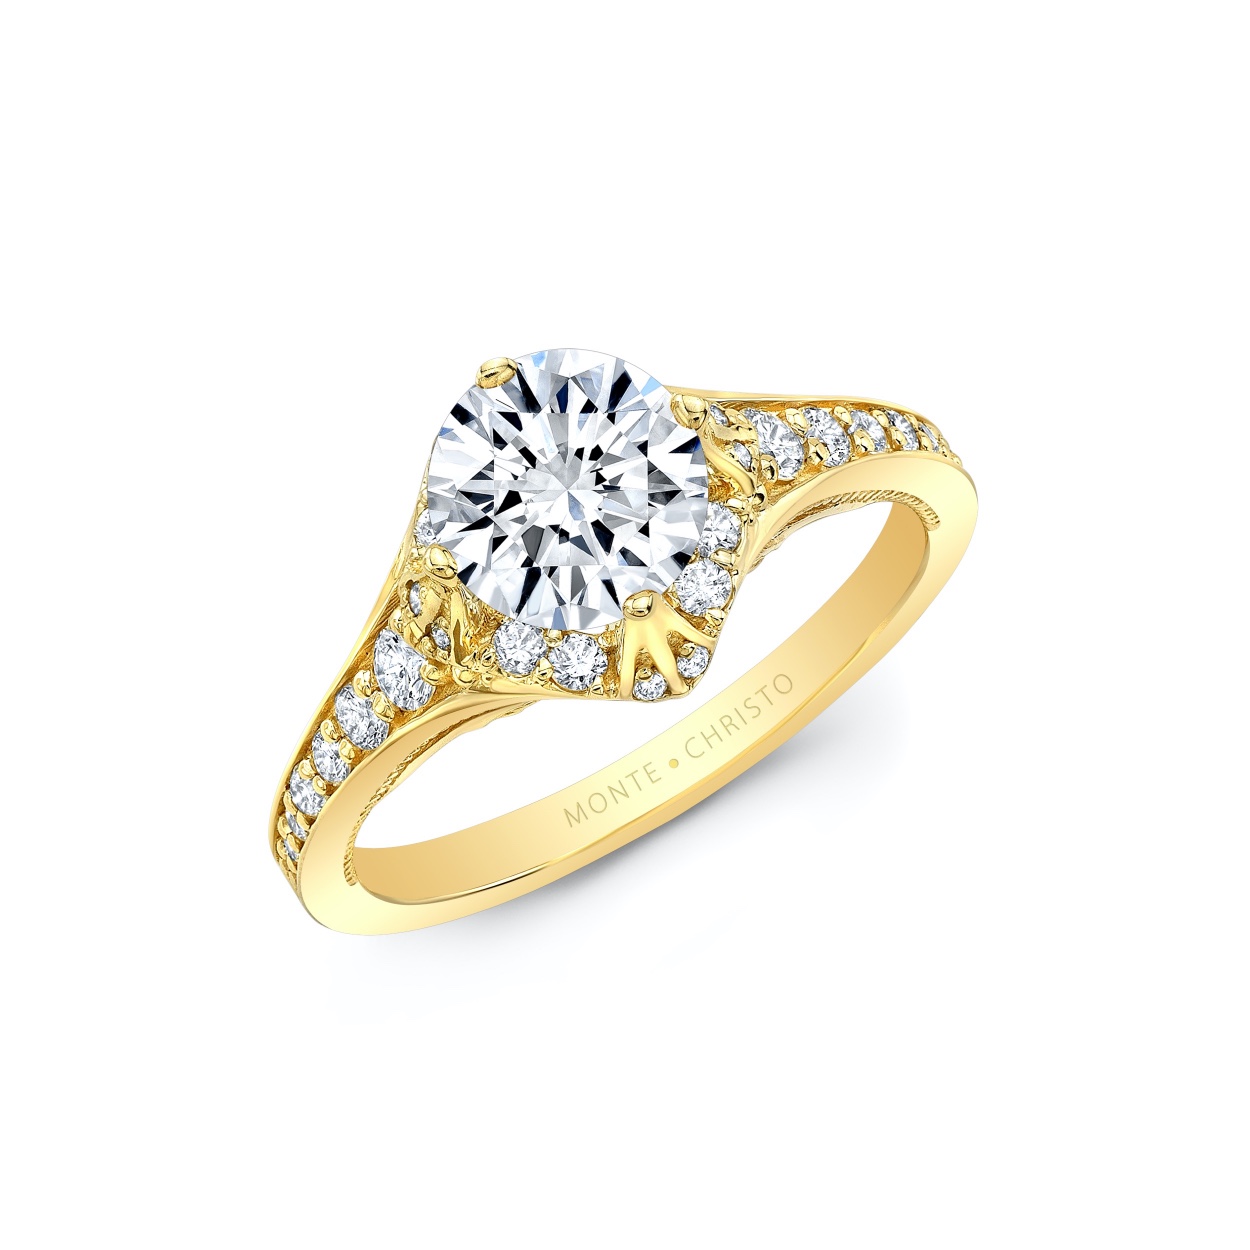 Petite Pavè Diamond Ring | Yellow Gold | Monte Christo Trade Corporation